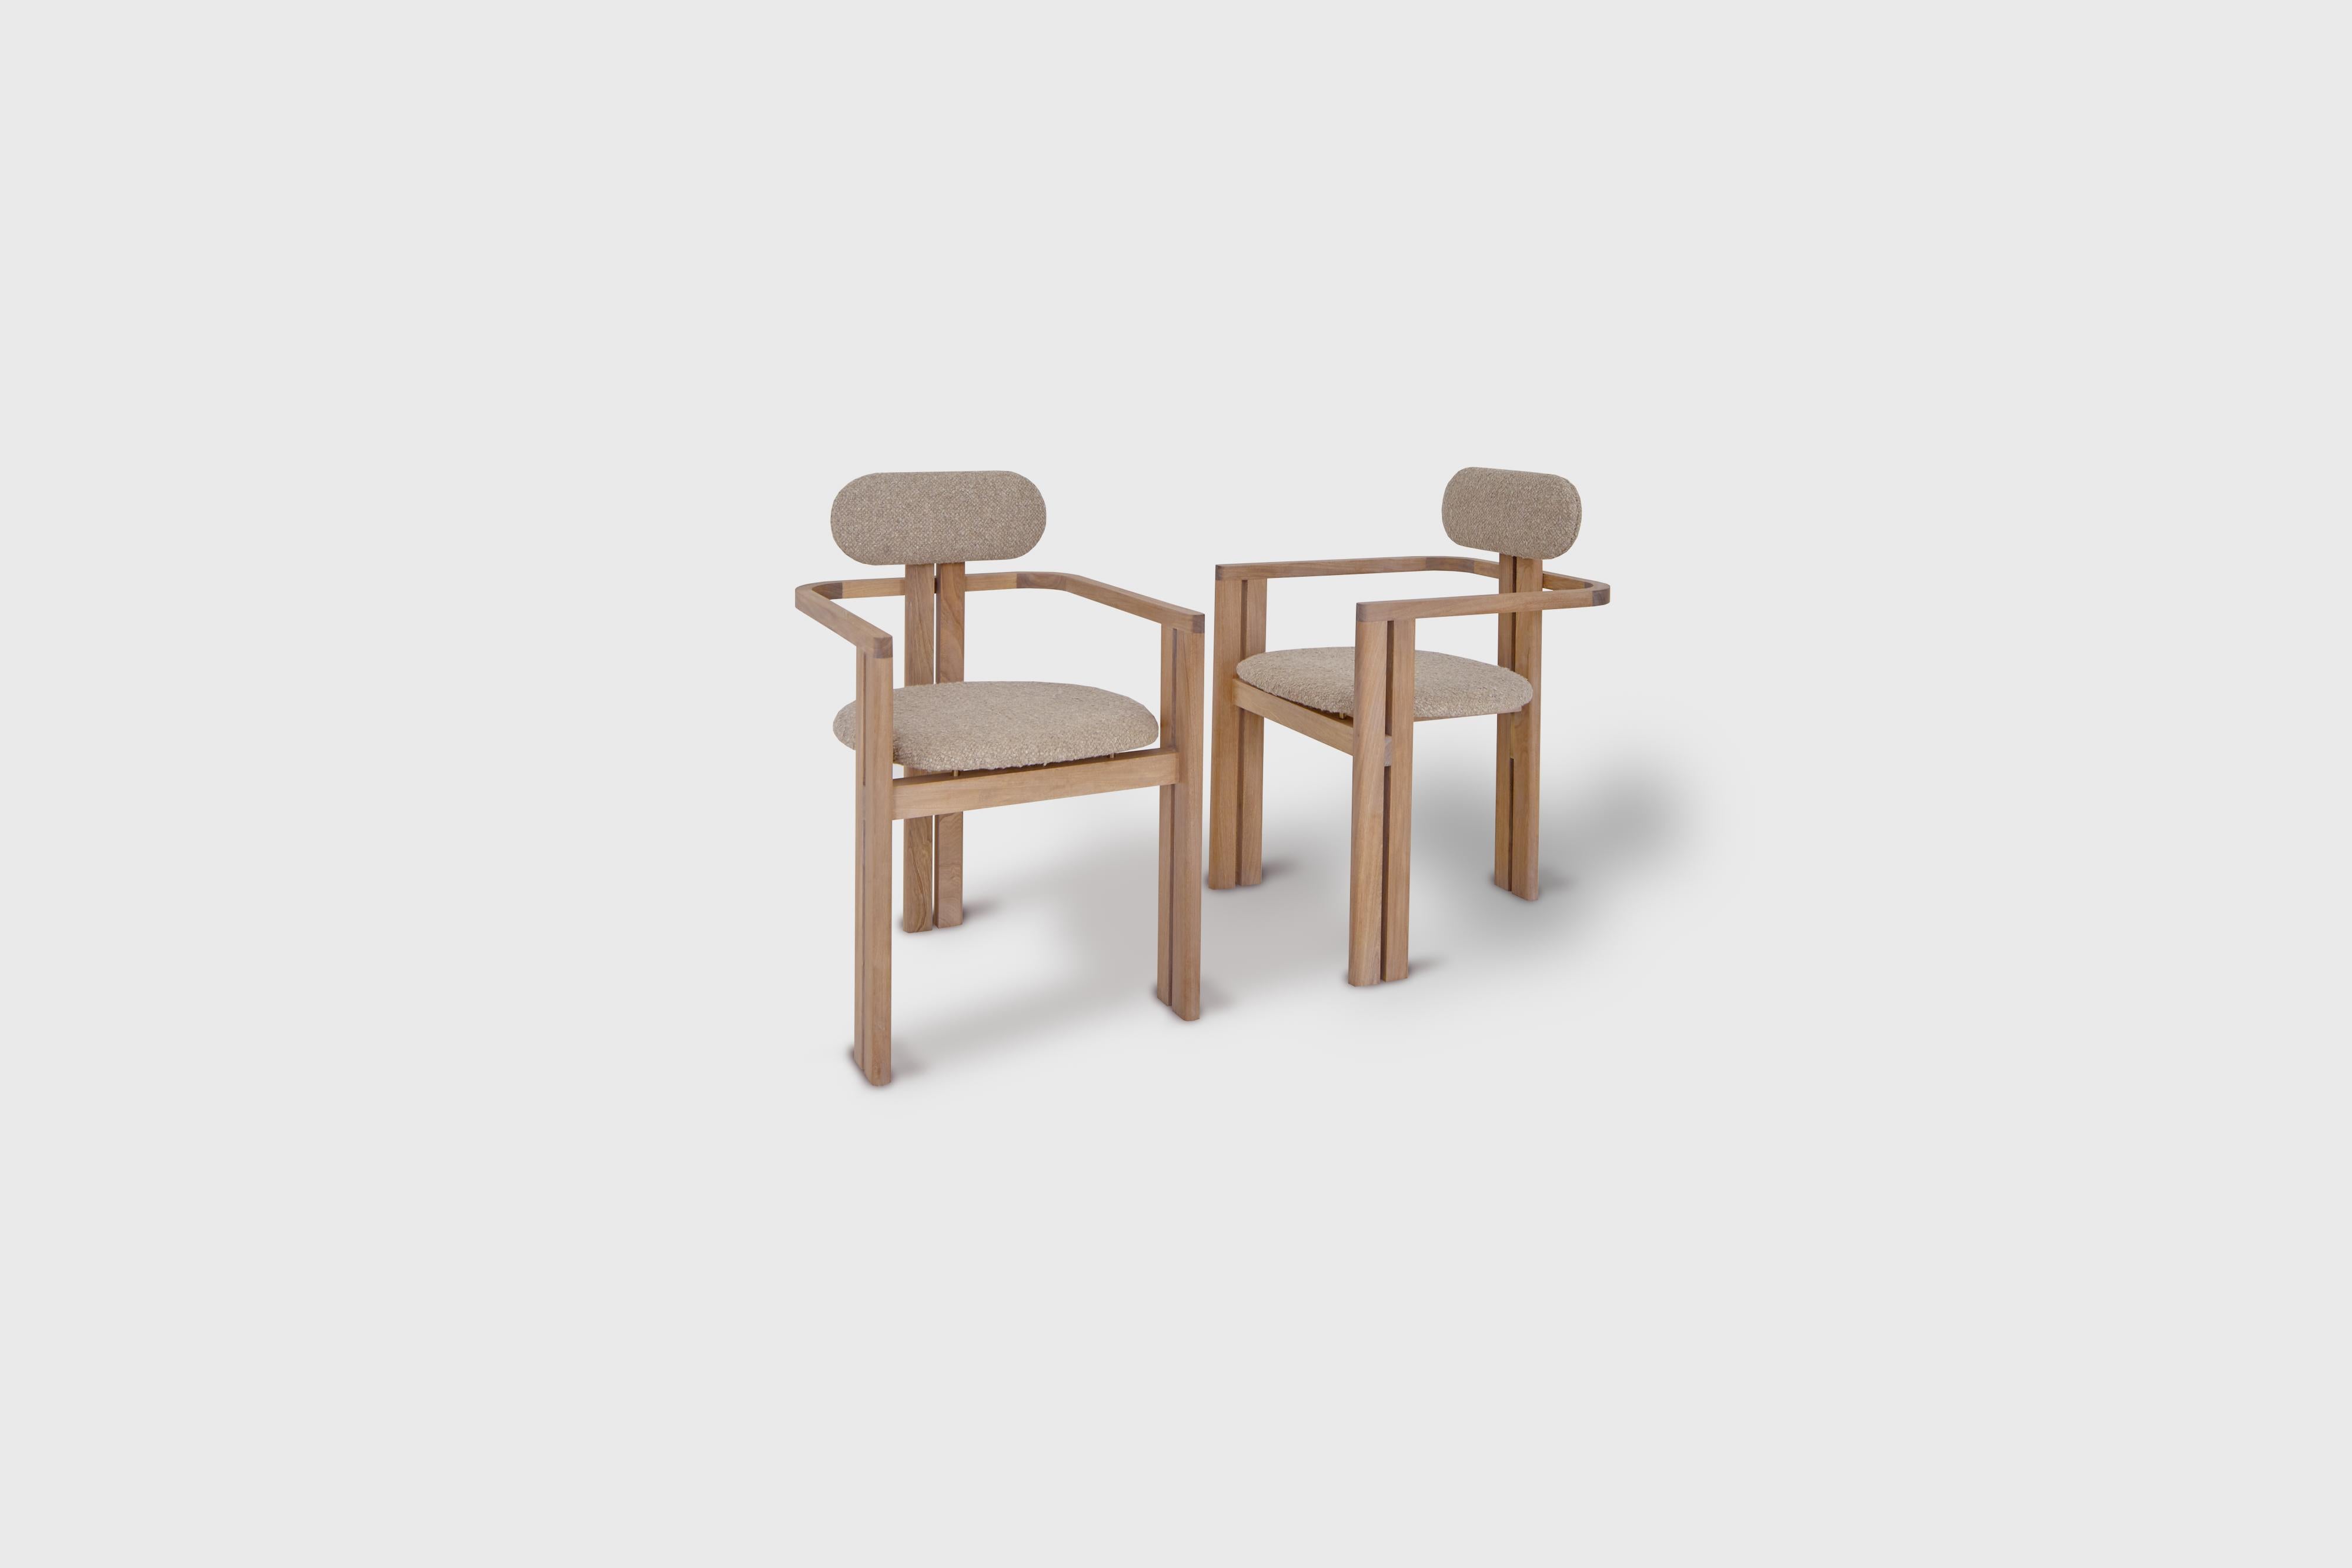 Chaise de salle à manger Simplon d'Atra Design
Dimensions : D 47,5 x L 54,1 x H 84,8 cm
MATERIALS : bois de chêne blanc, tissu de lin bouclé.
Le matériau de l'assise est disponible en cuir ou en tissu.

Atra Design
Nous sommes Atra, une marque